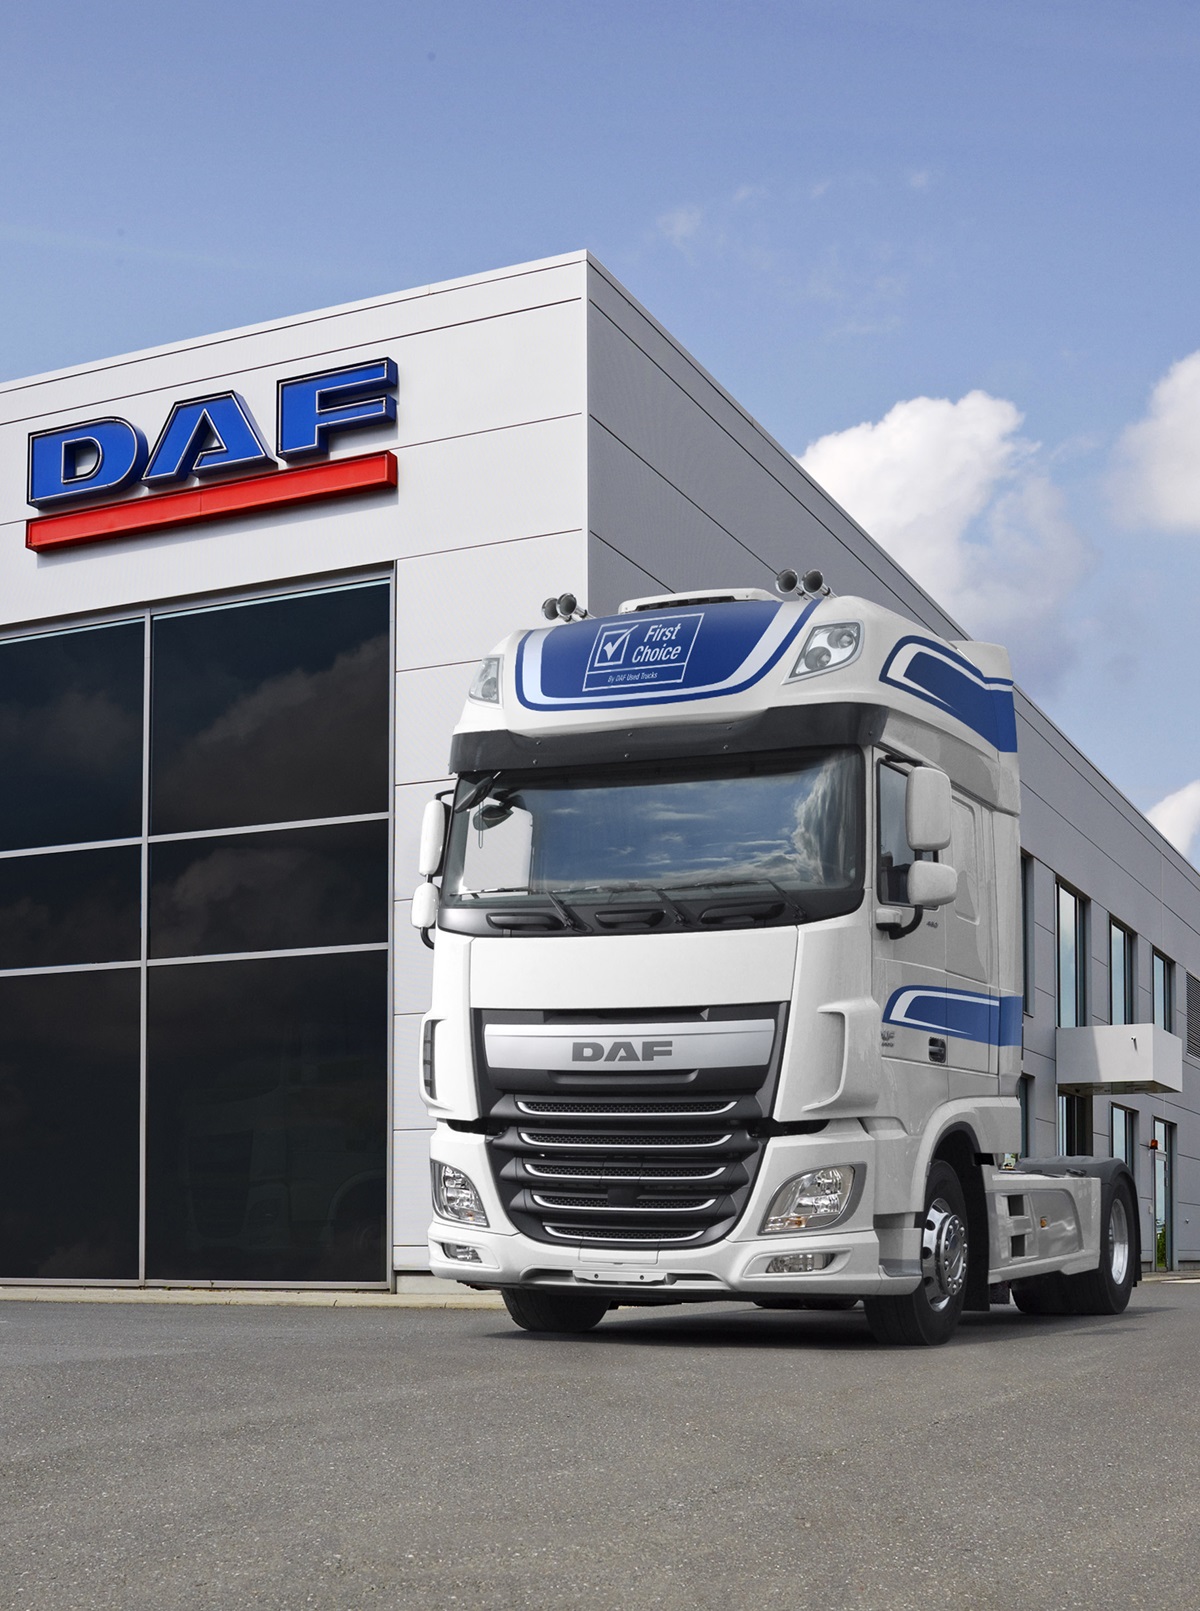 Kauf eines Gebrauchtfahrzeugs - DAF Trucks Schweiz